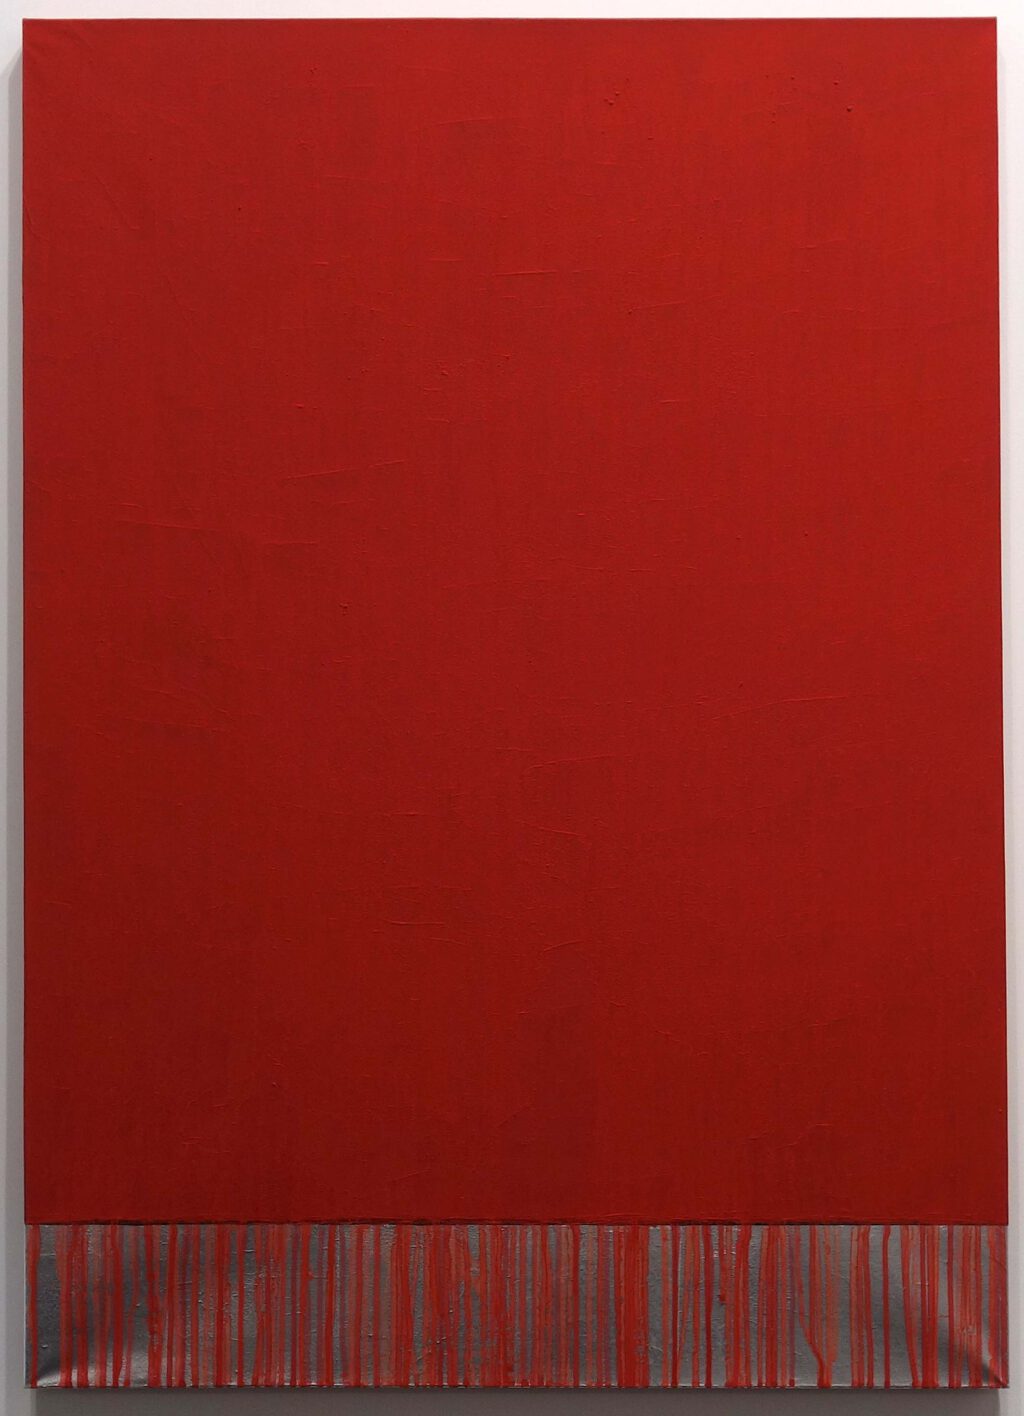 桑山 忠明 KUWAYAMA Tadaaki TK8742 1-2-61 1961, Red pigment with silver leaf, 108 x 76.2 cm @ The Mayor Gallery, Art Basel 2023